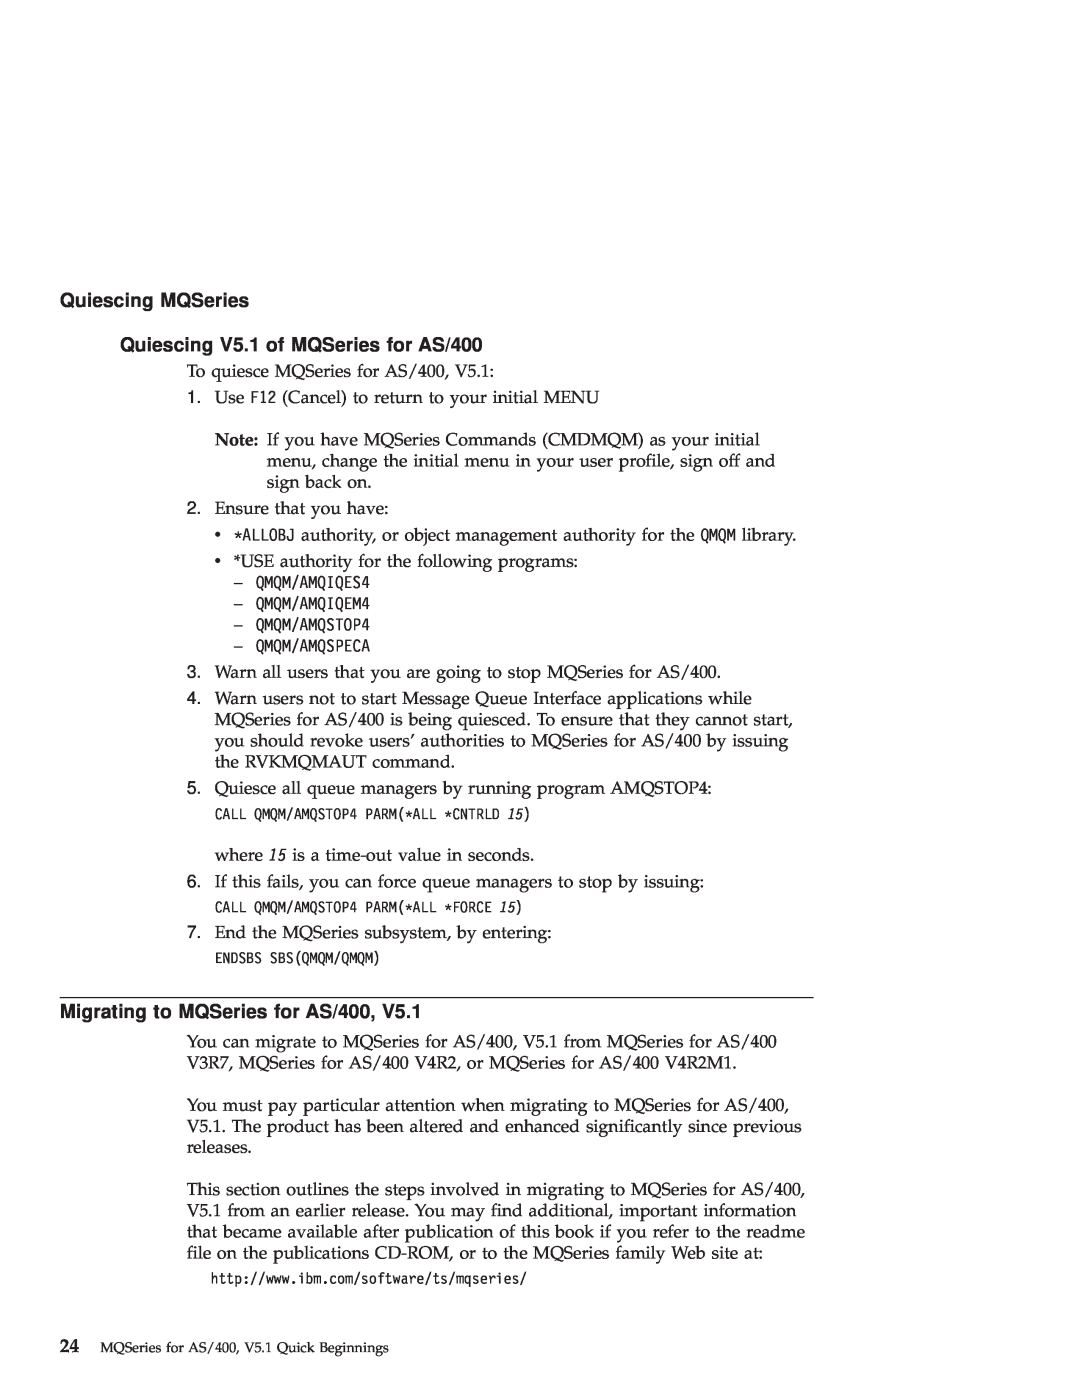 IBM GC34-5557-00 manual Quiescing MQSeries Quiescing V5.1 of MQSeries for AS/400, Migrating to MQSeries for AS/400 